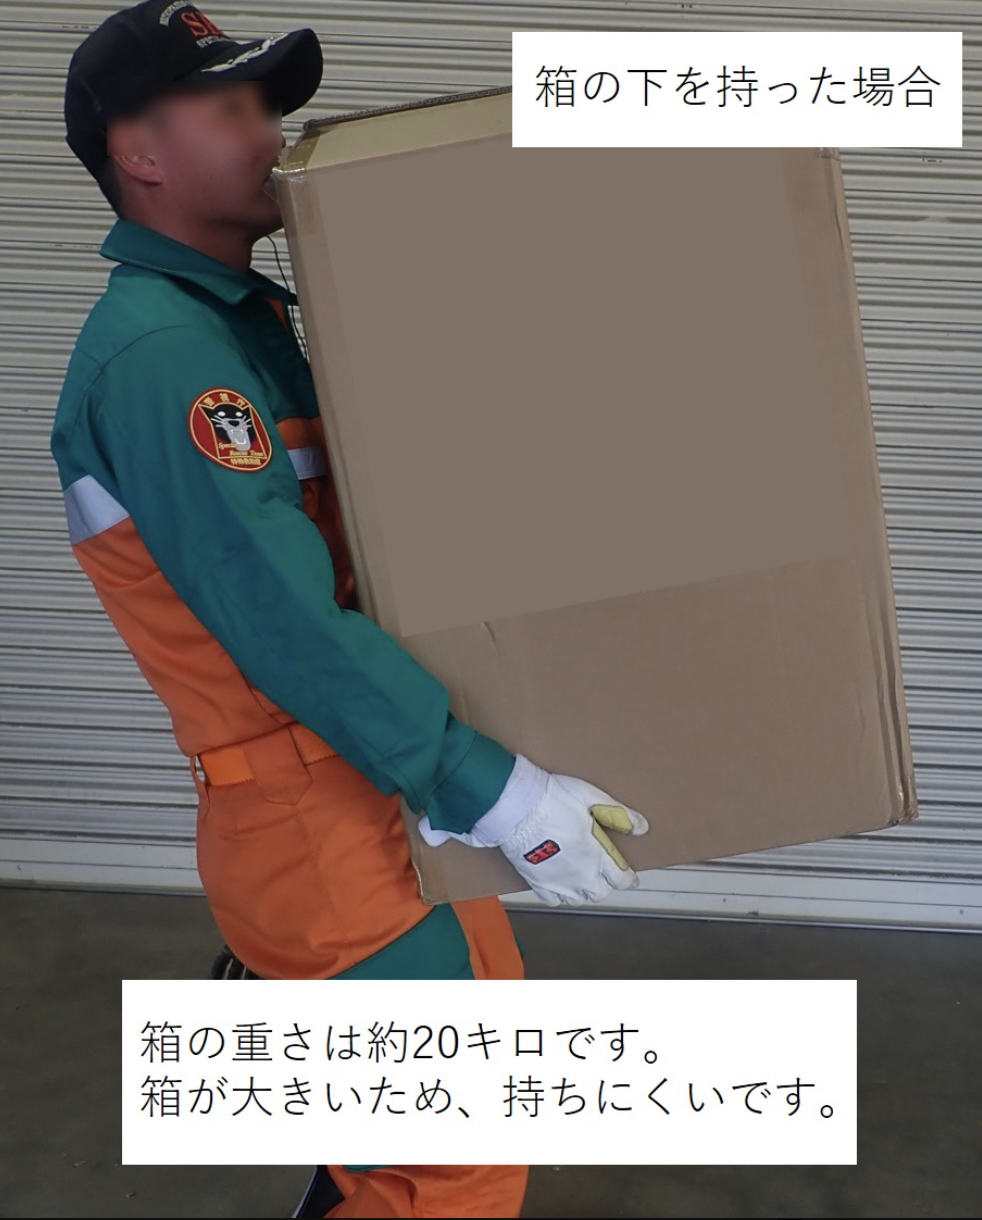 橙色の作業服を着た人が大きな箱を運んでいます。箱には「箱の下に荷物を置かないでください」と書かれています。